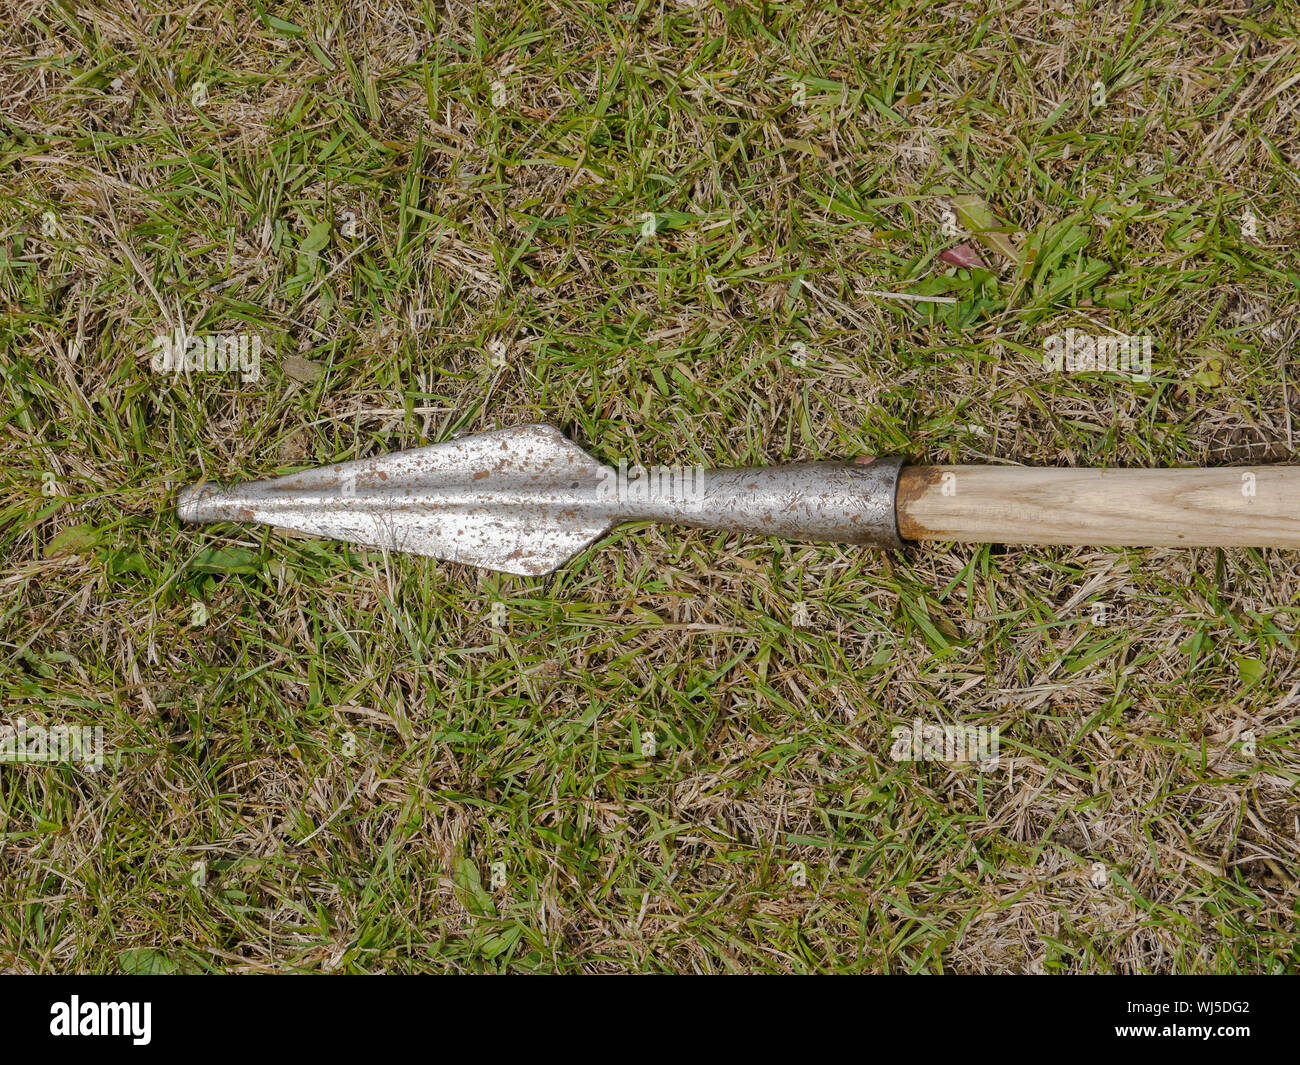 Réplica de una edad oscura lanza utilizada por re-enactors histórico Foto de stock